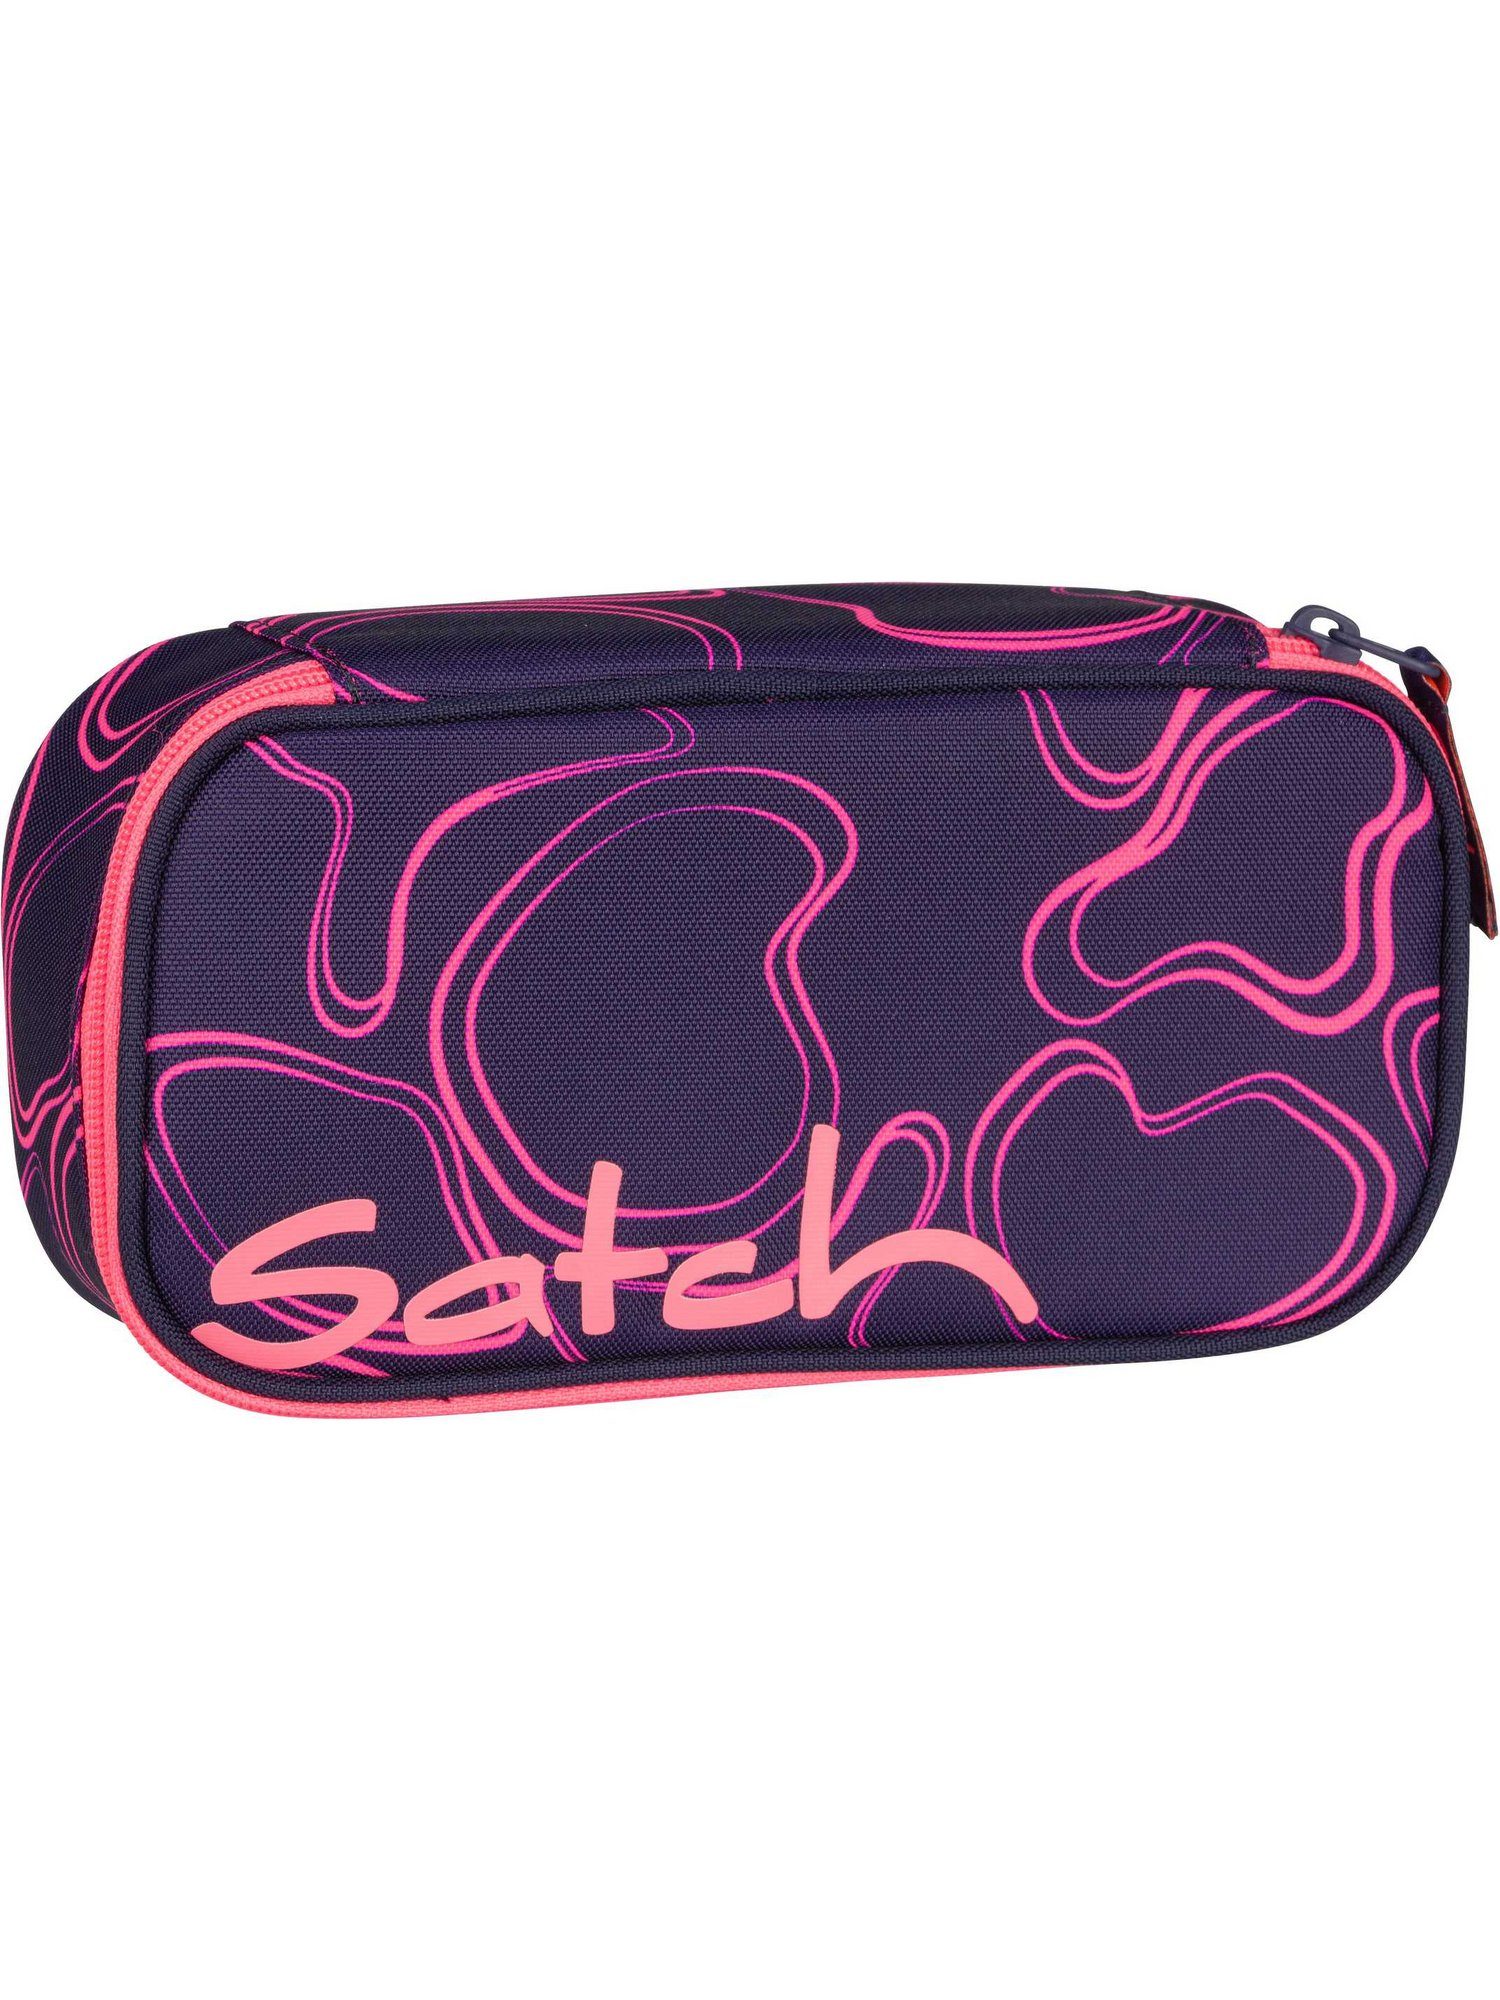 Hochwertiges Material Satch Federmäppchen satch Schlamperbox Pink Supreme